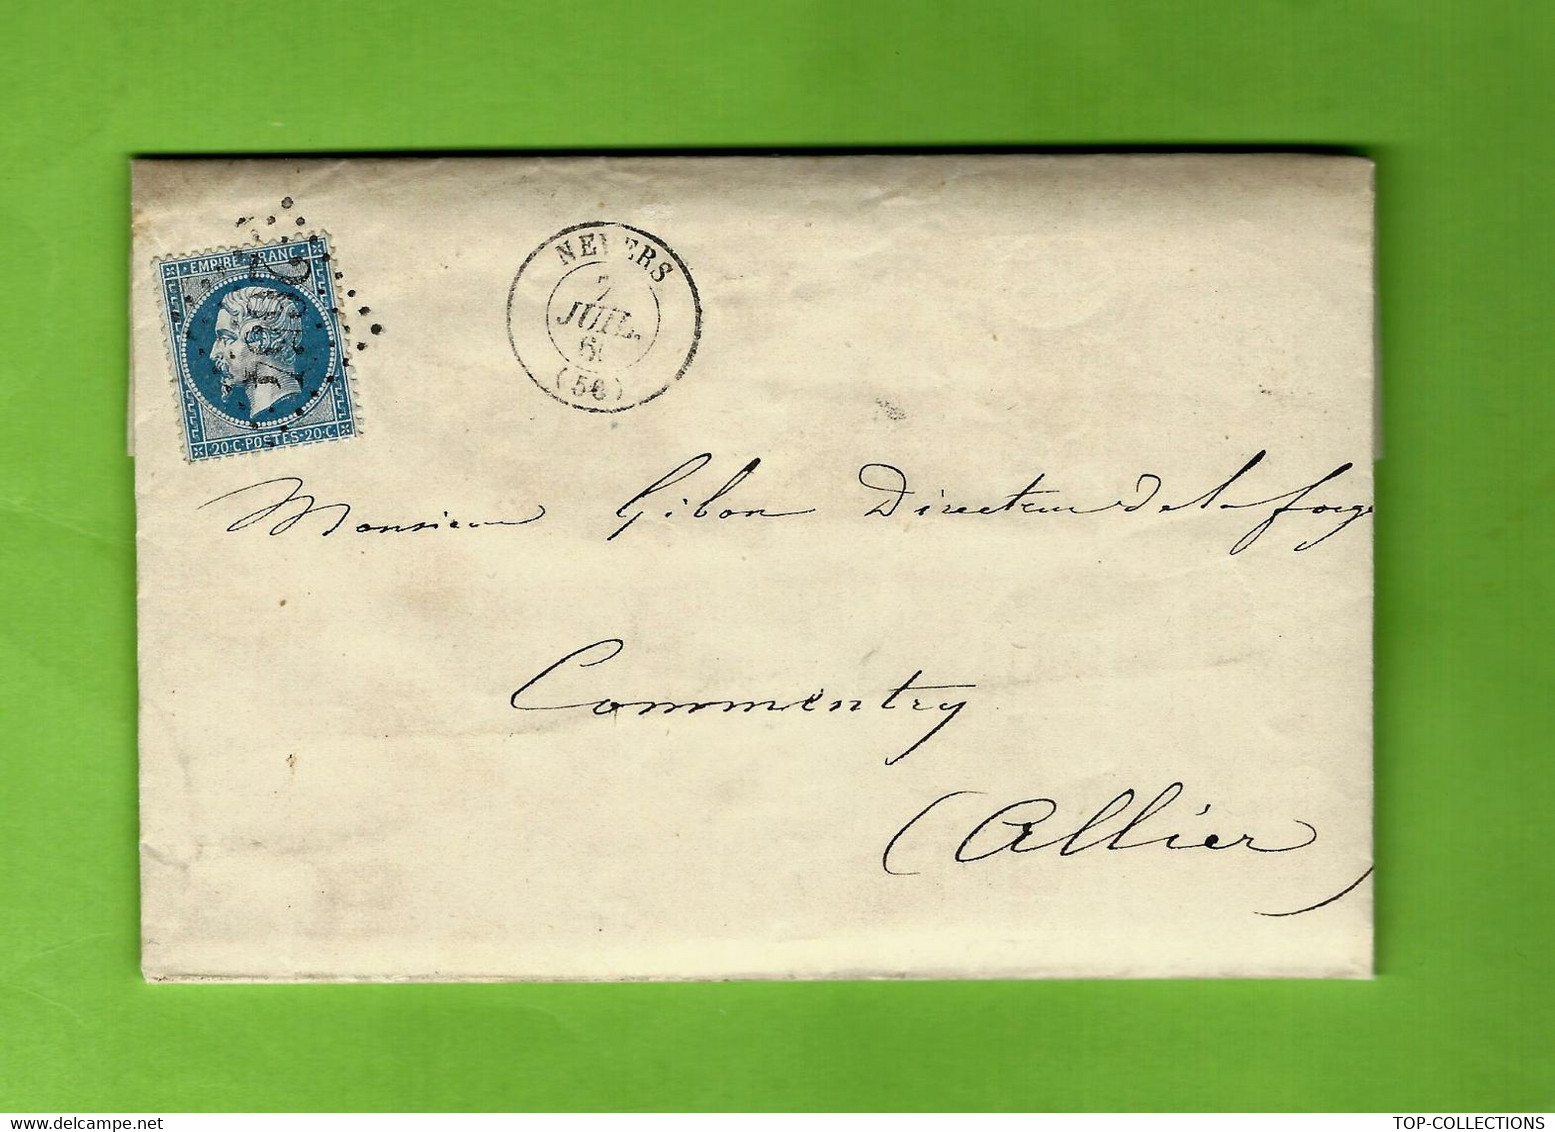 1866 ARMEE MILITAIRES ARTILLERIE INSPECTION NEVERS  SERVICE DES FORGES  CANONS FUSILS - Documentos Históricos